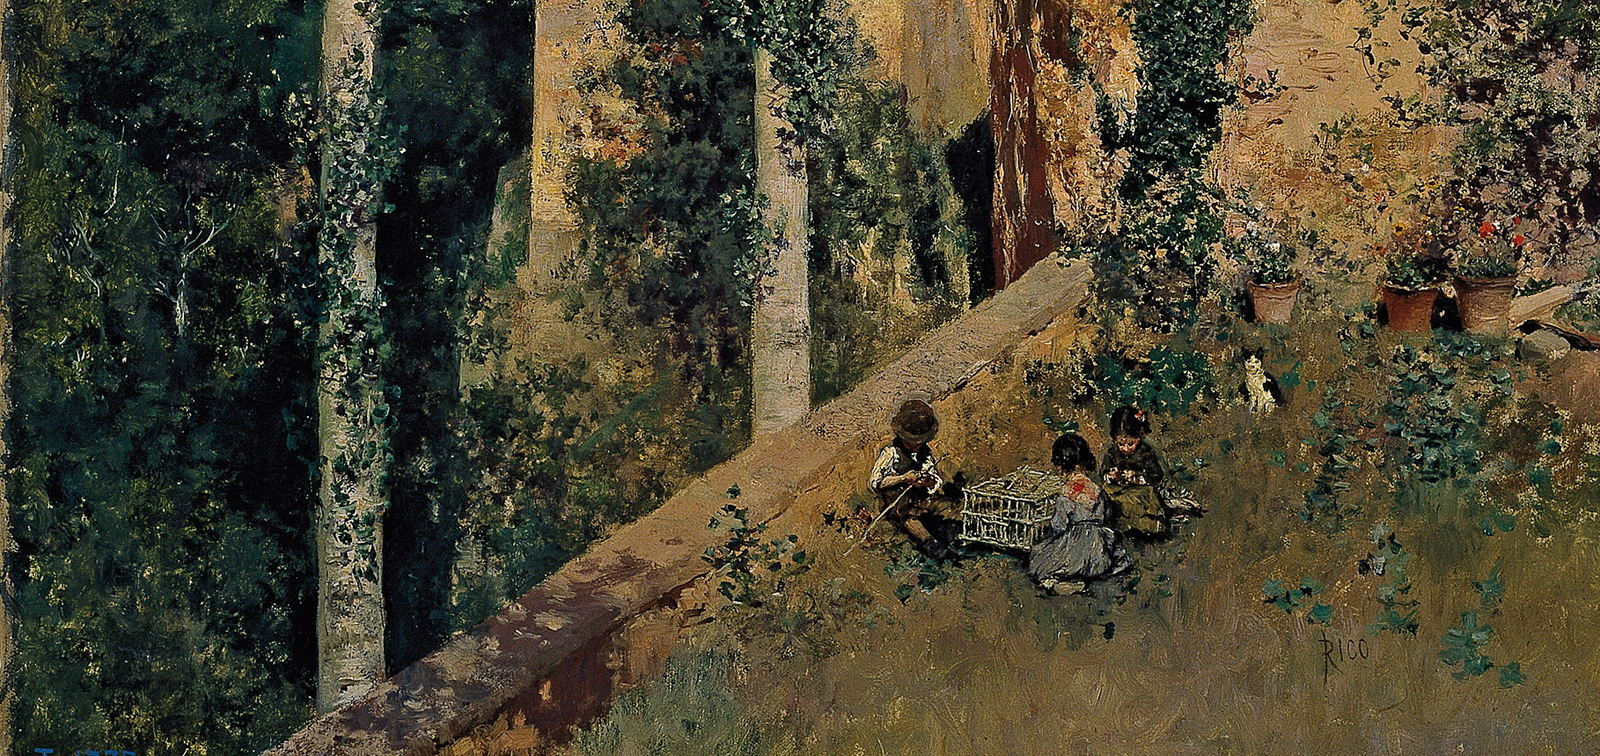 The landscape painter Martín Rico (1833-1908)